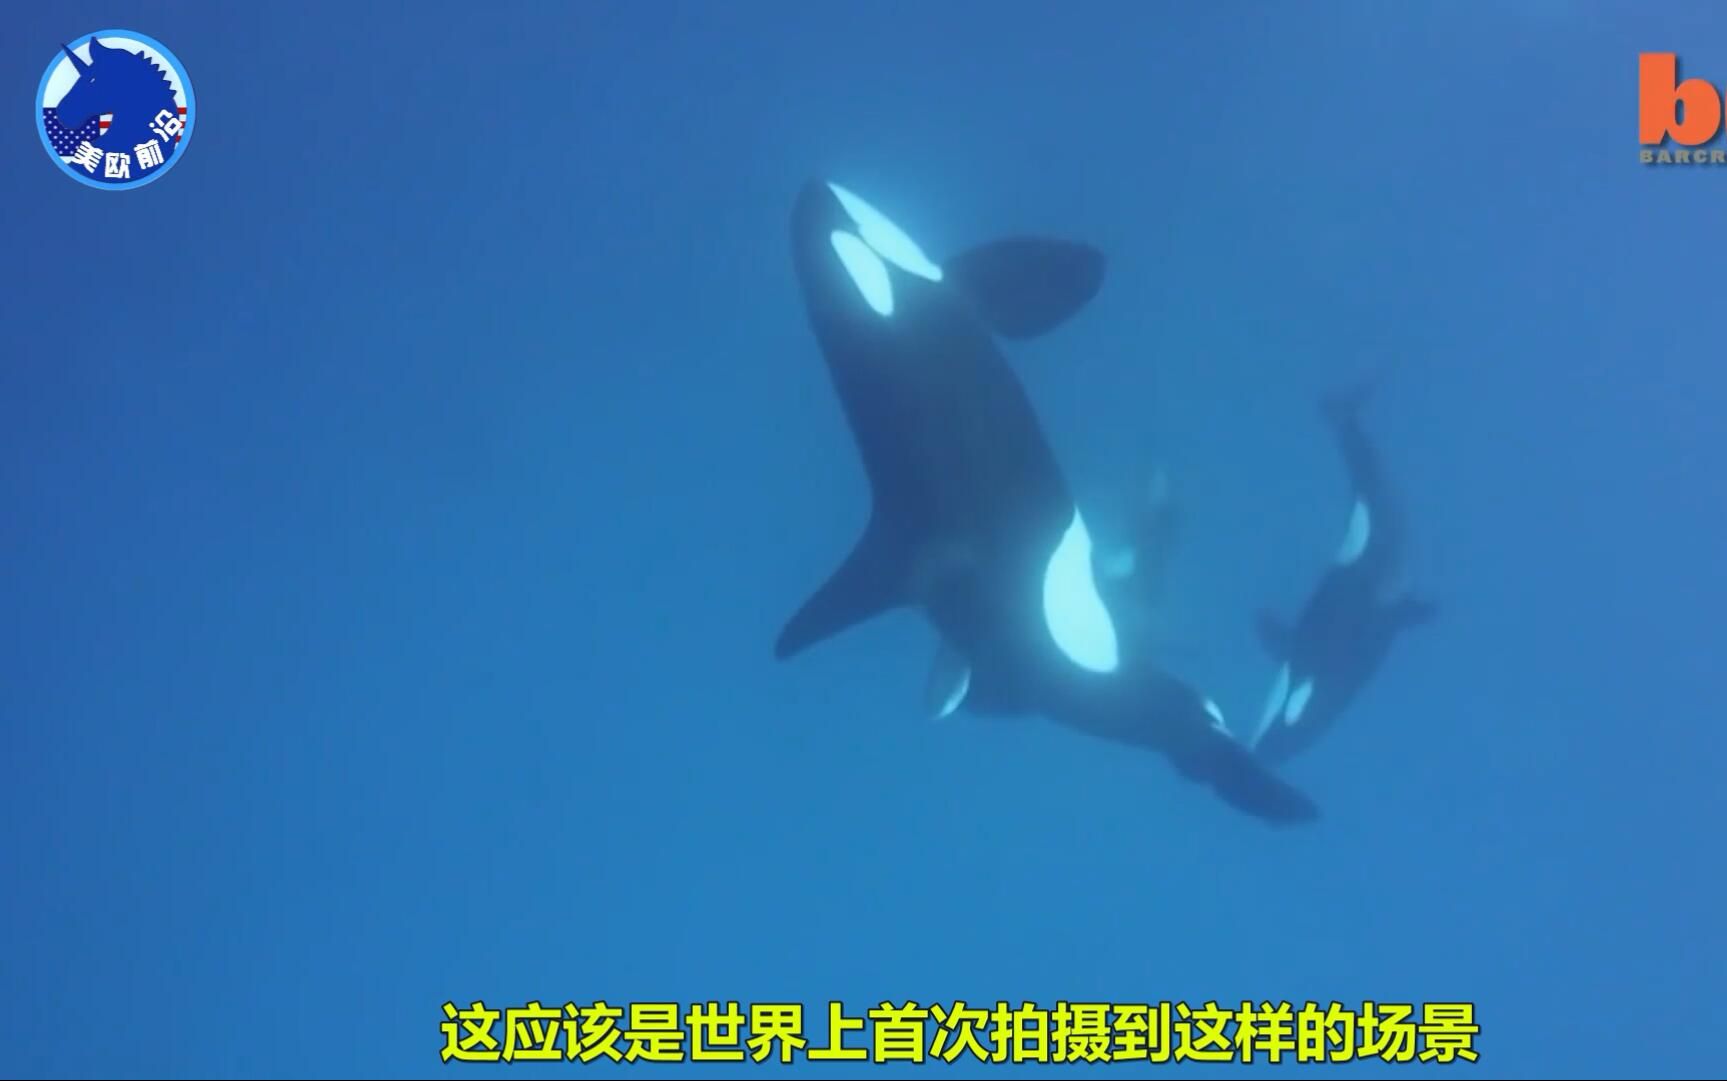 震撼人类第一次拍到海中两大霸王掠食者虎鲸和虎鲨大决斗